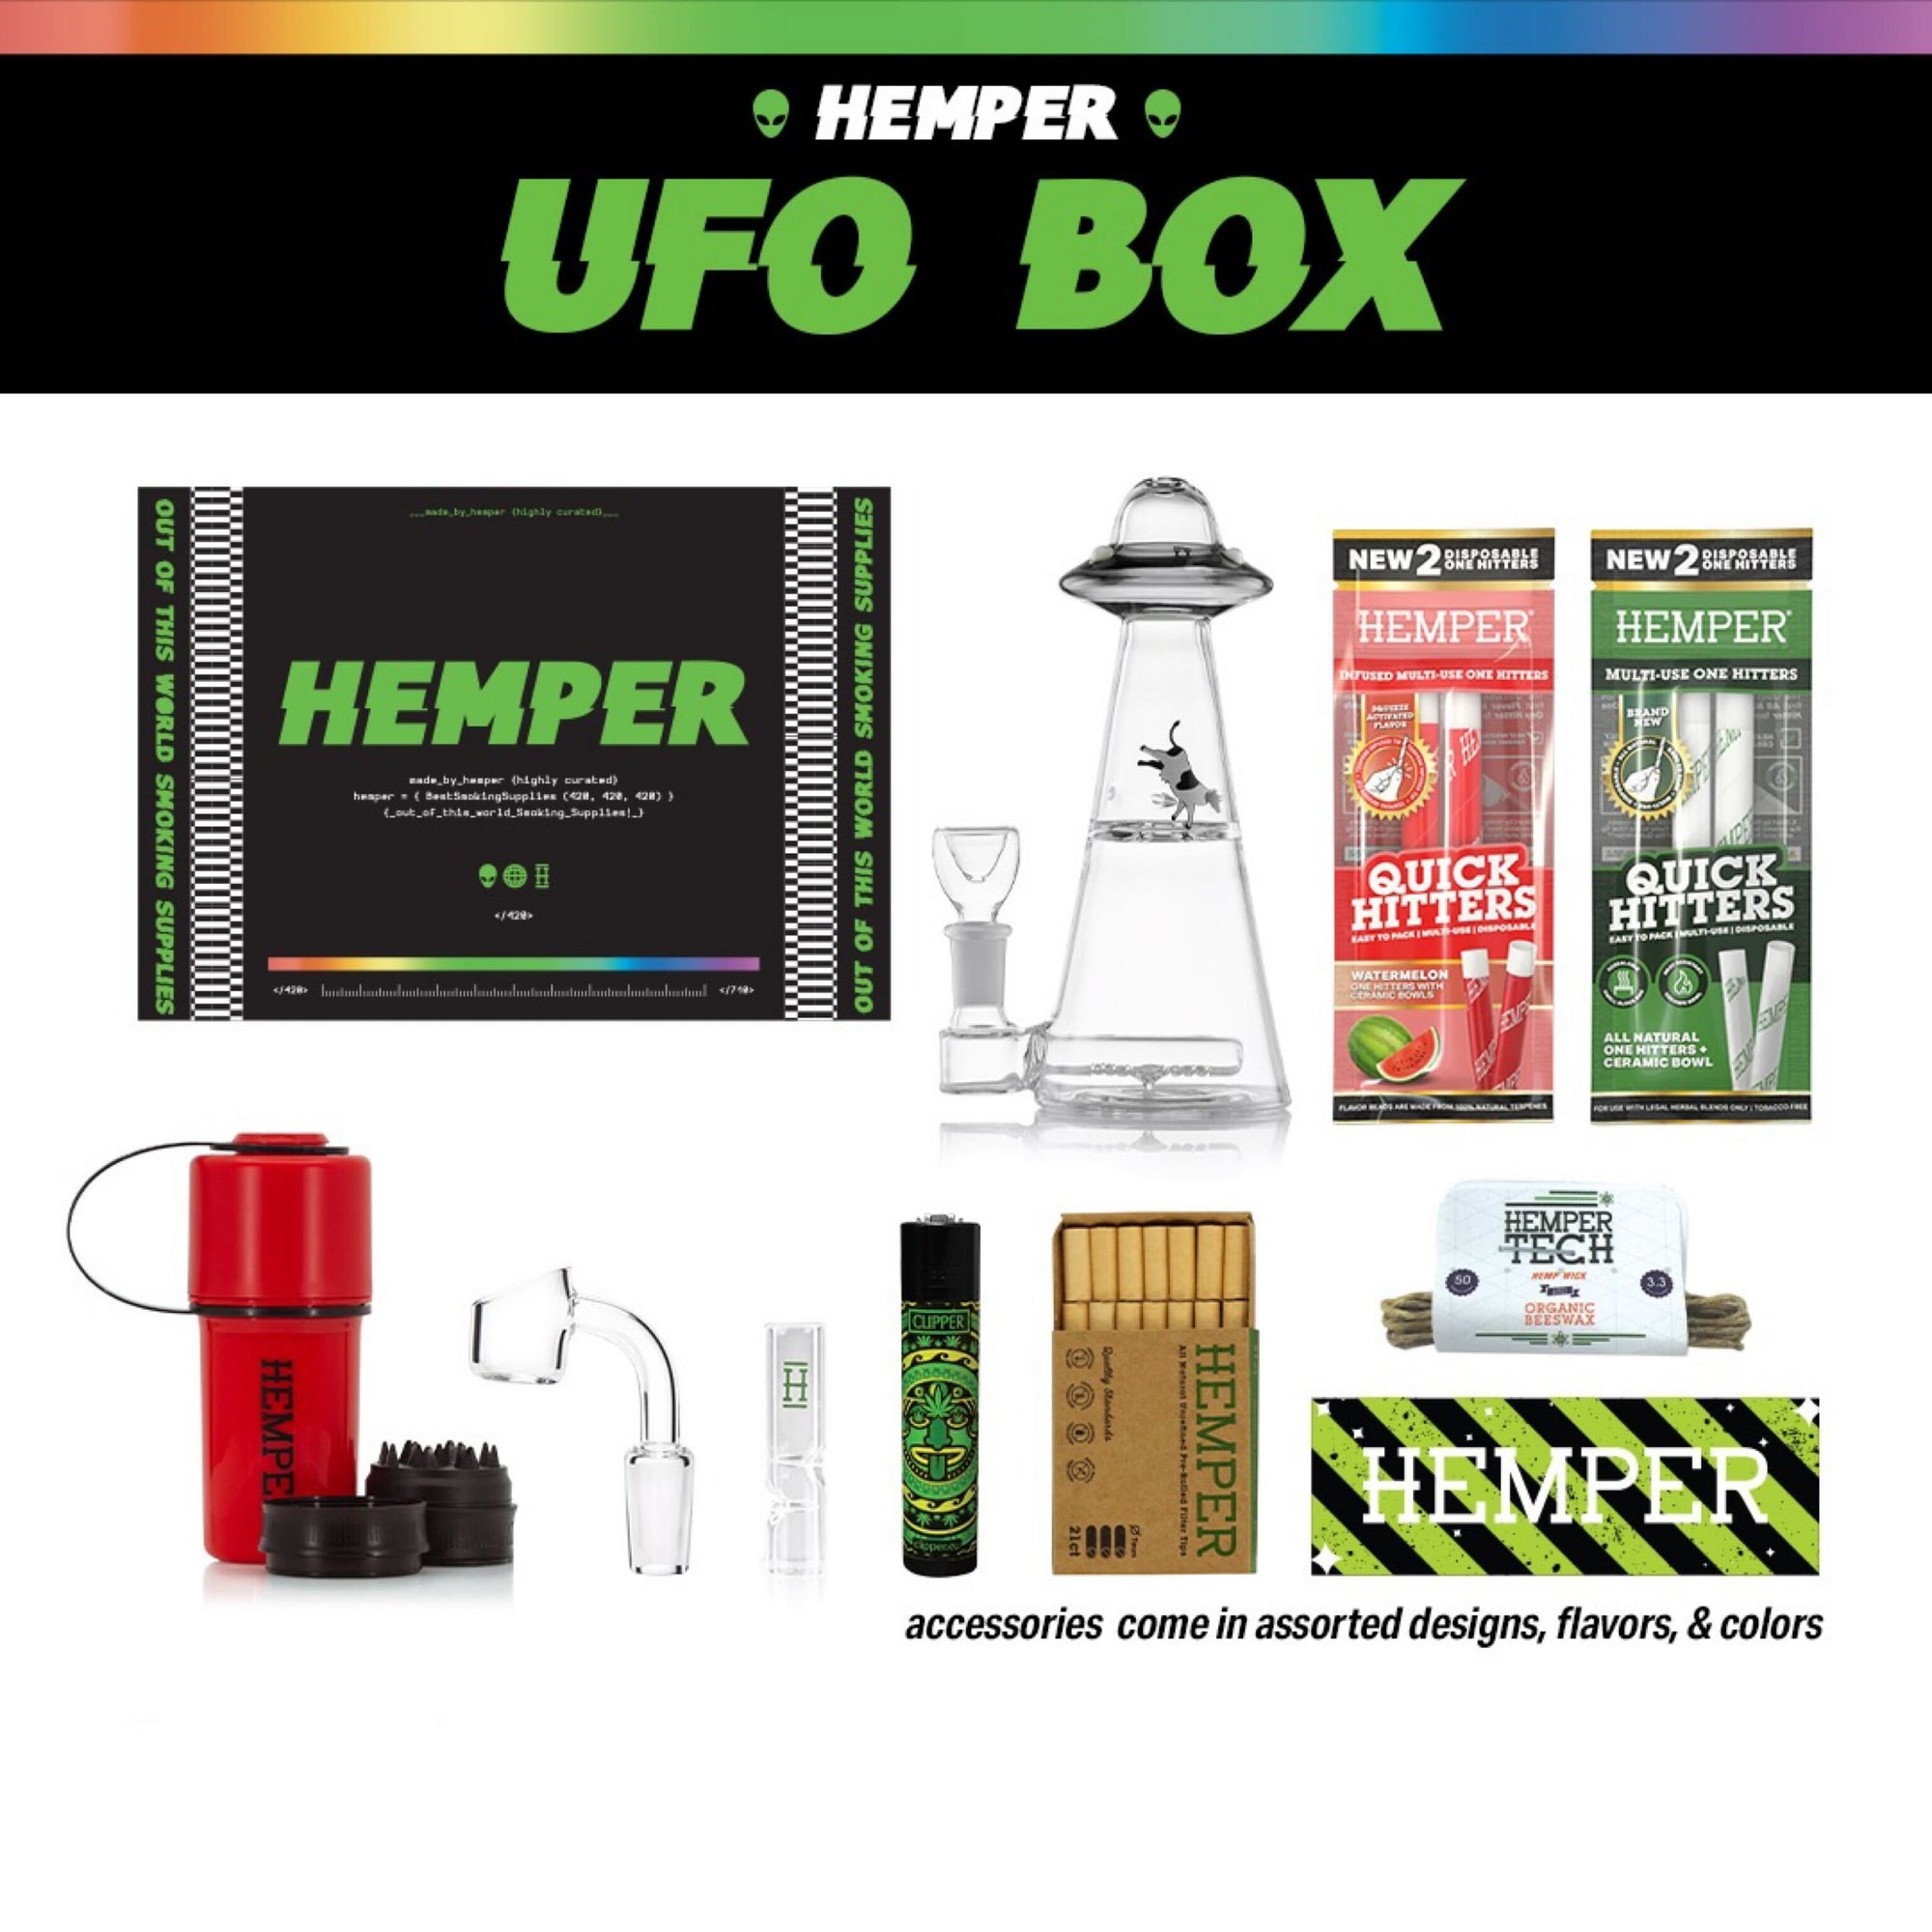 UFO Box